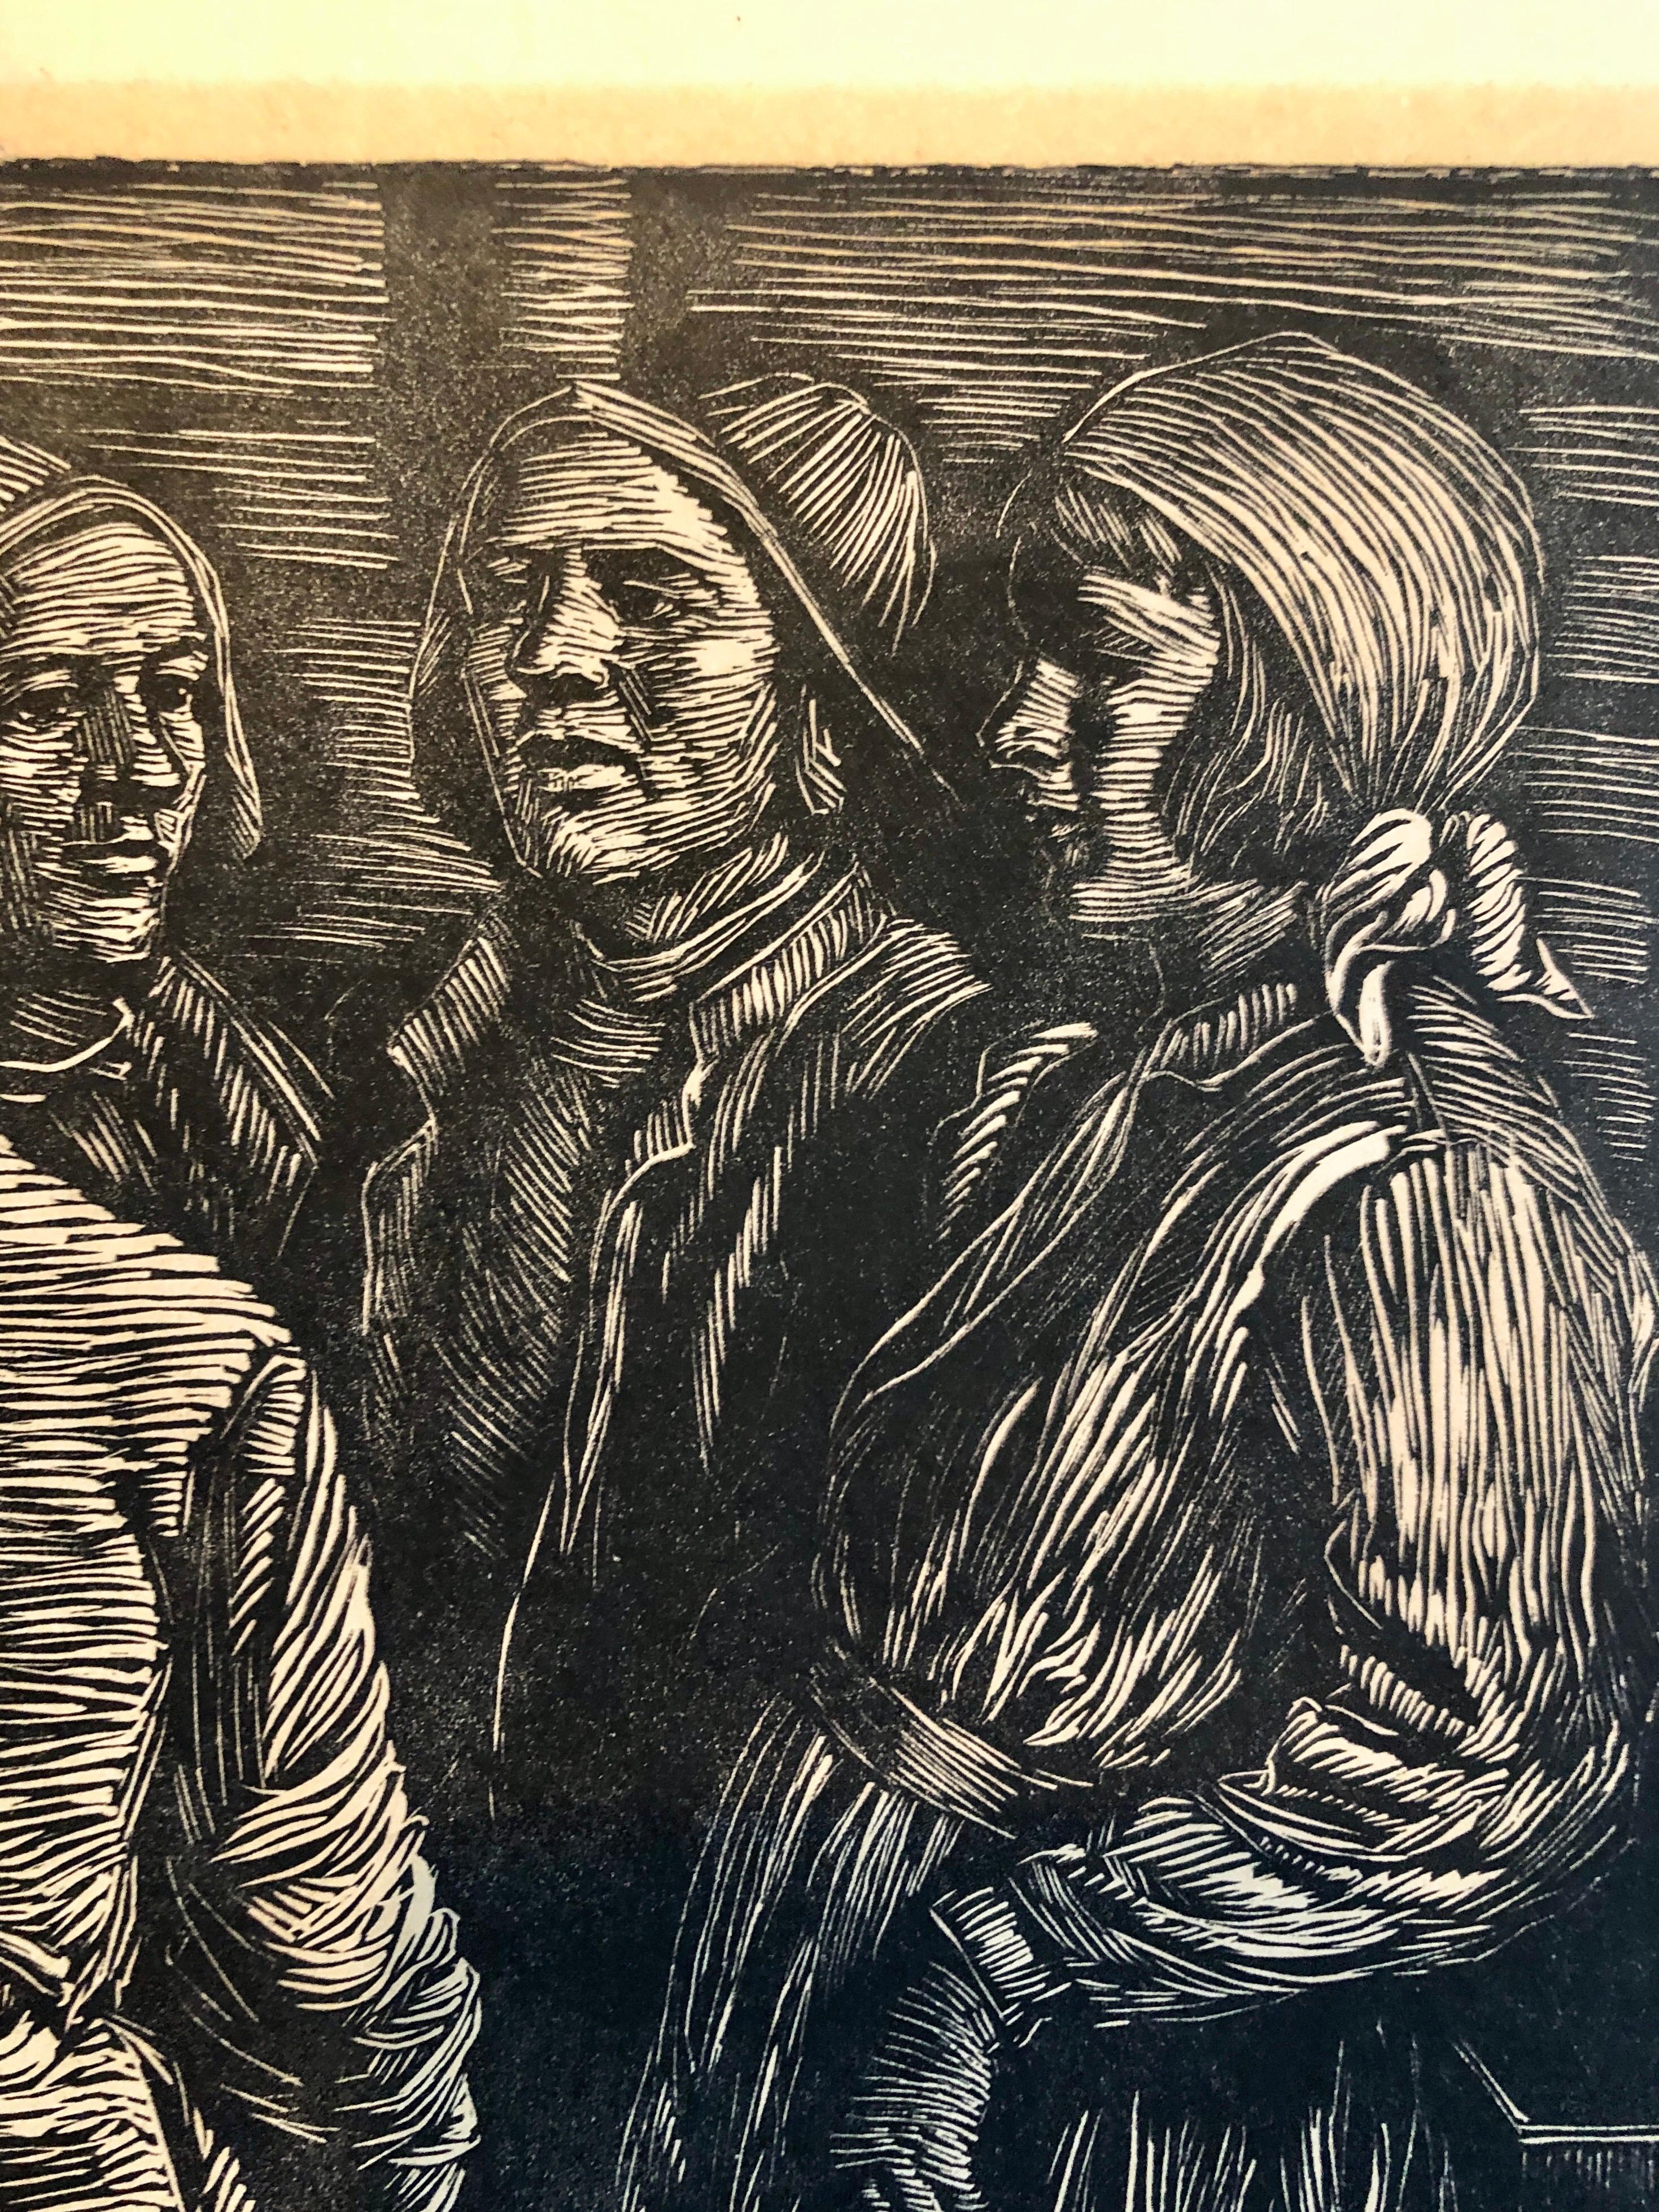 Certaines de ses impressions ont été publiées par la WPA. Il s'agit d'une gravure sur bois signée au crayon. D'une petite édition. Il mesure 12 X 12.5 feuille complète avec marges. L'image est plus petite. 

Albert Abramovitz (1879-1963), né à Riga,